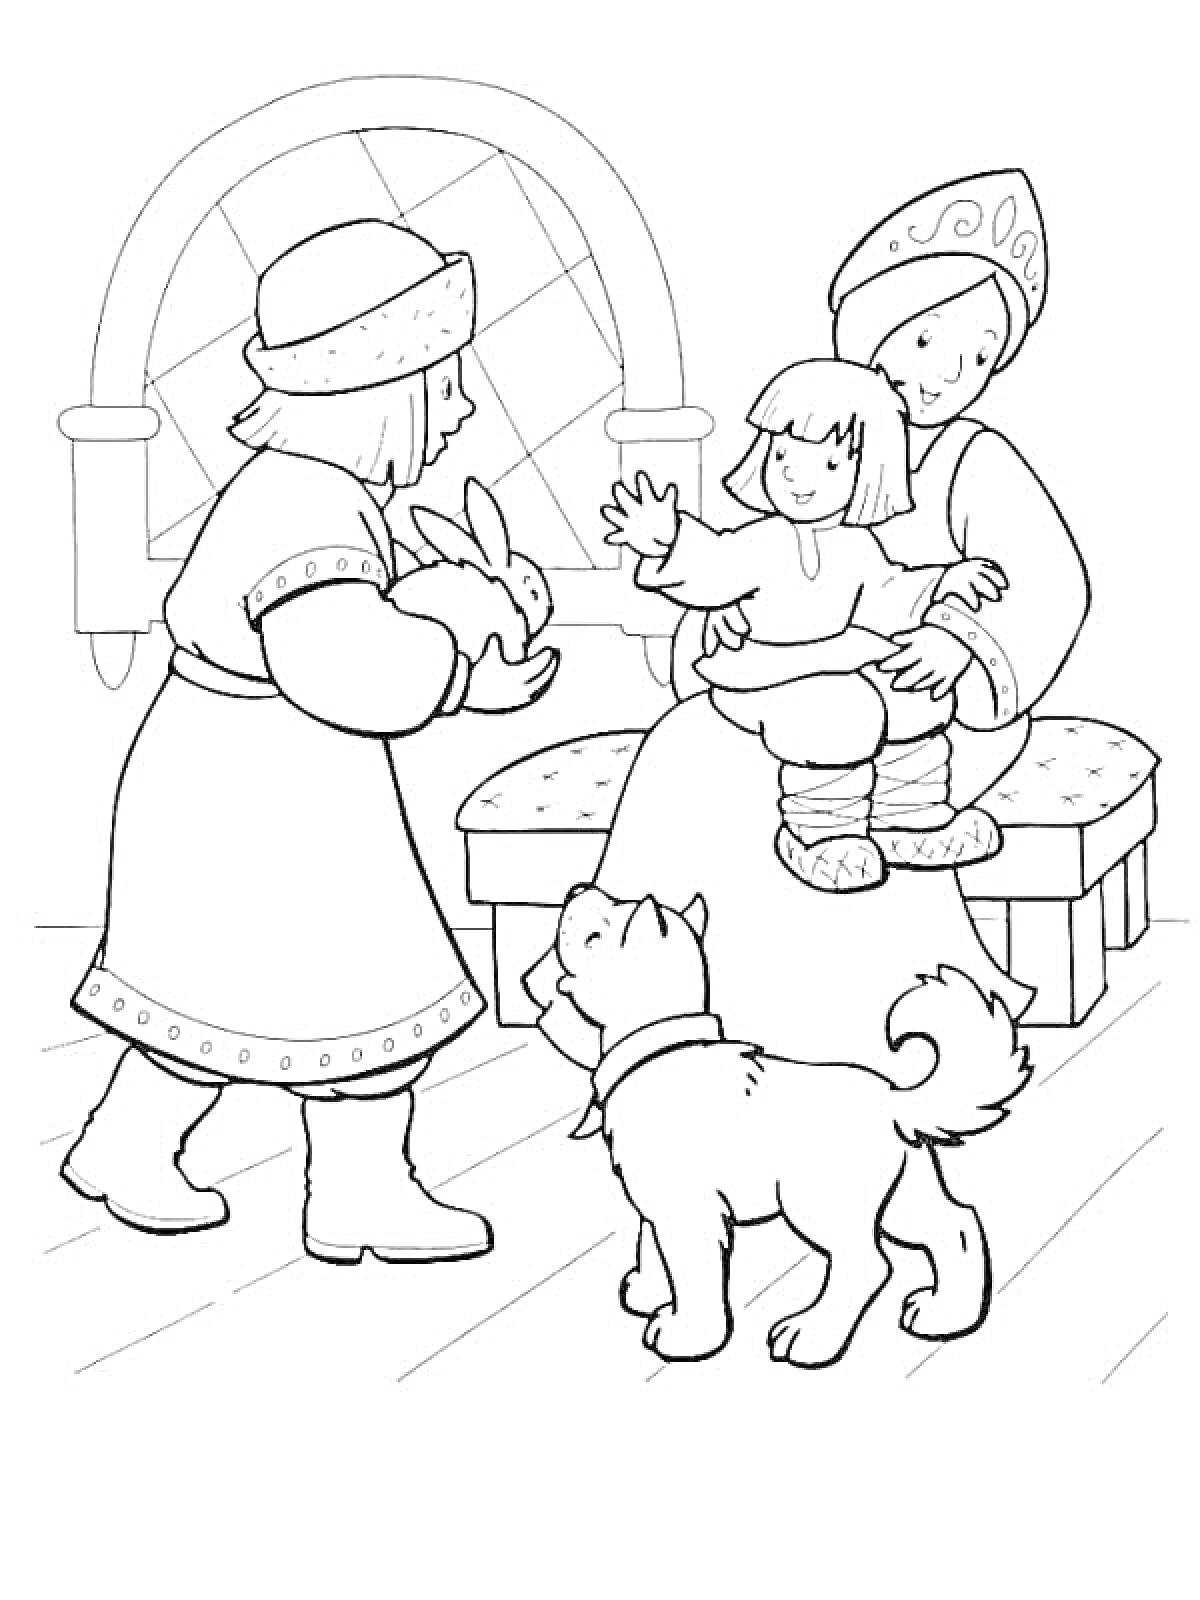 Сестрица Аленушка и братец Иванушка с мужчиной, кроликом и собакой в доме